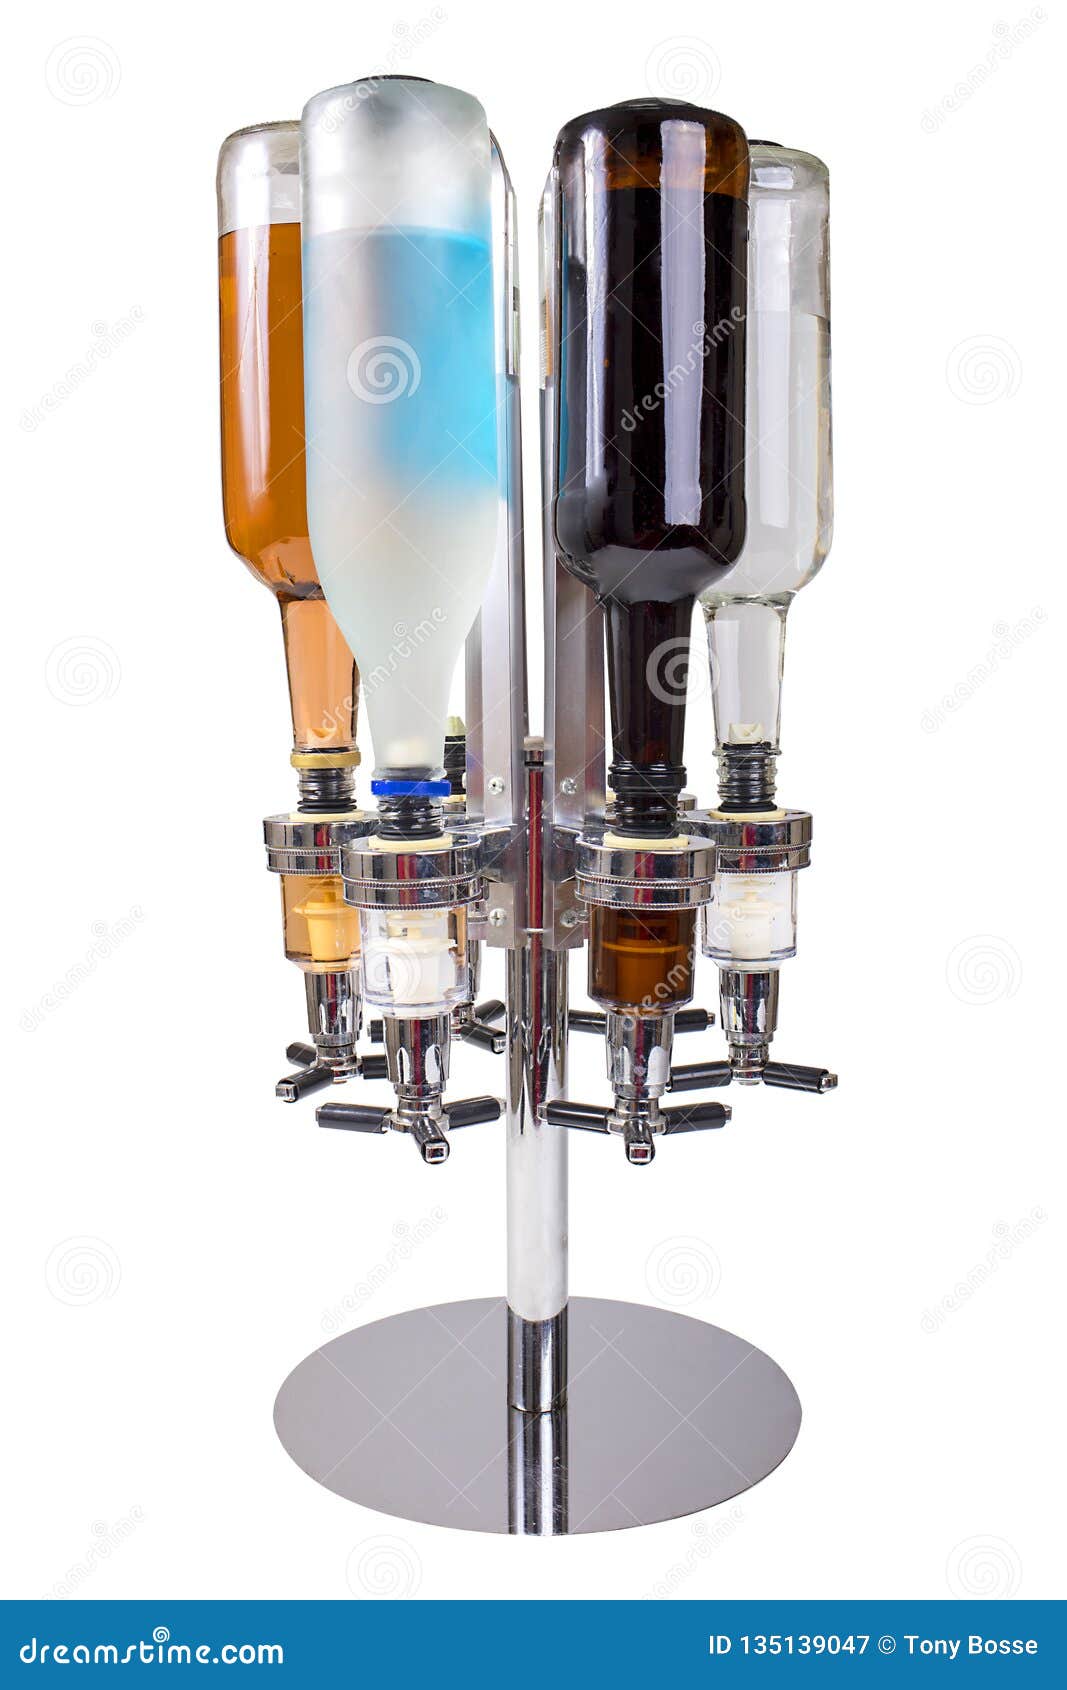 Caddy Liquor Dispenser with liquor bottles isolated on white